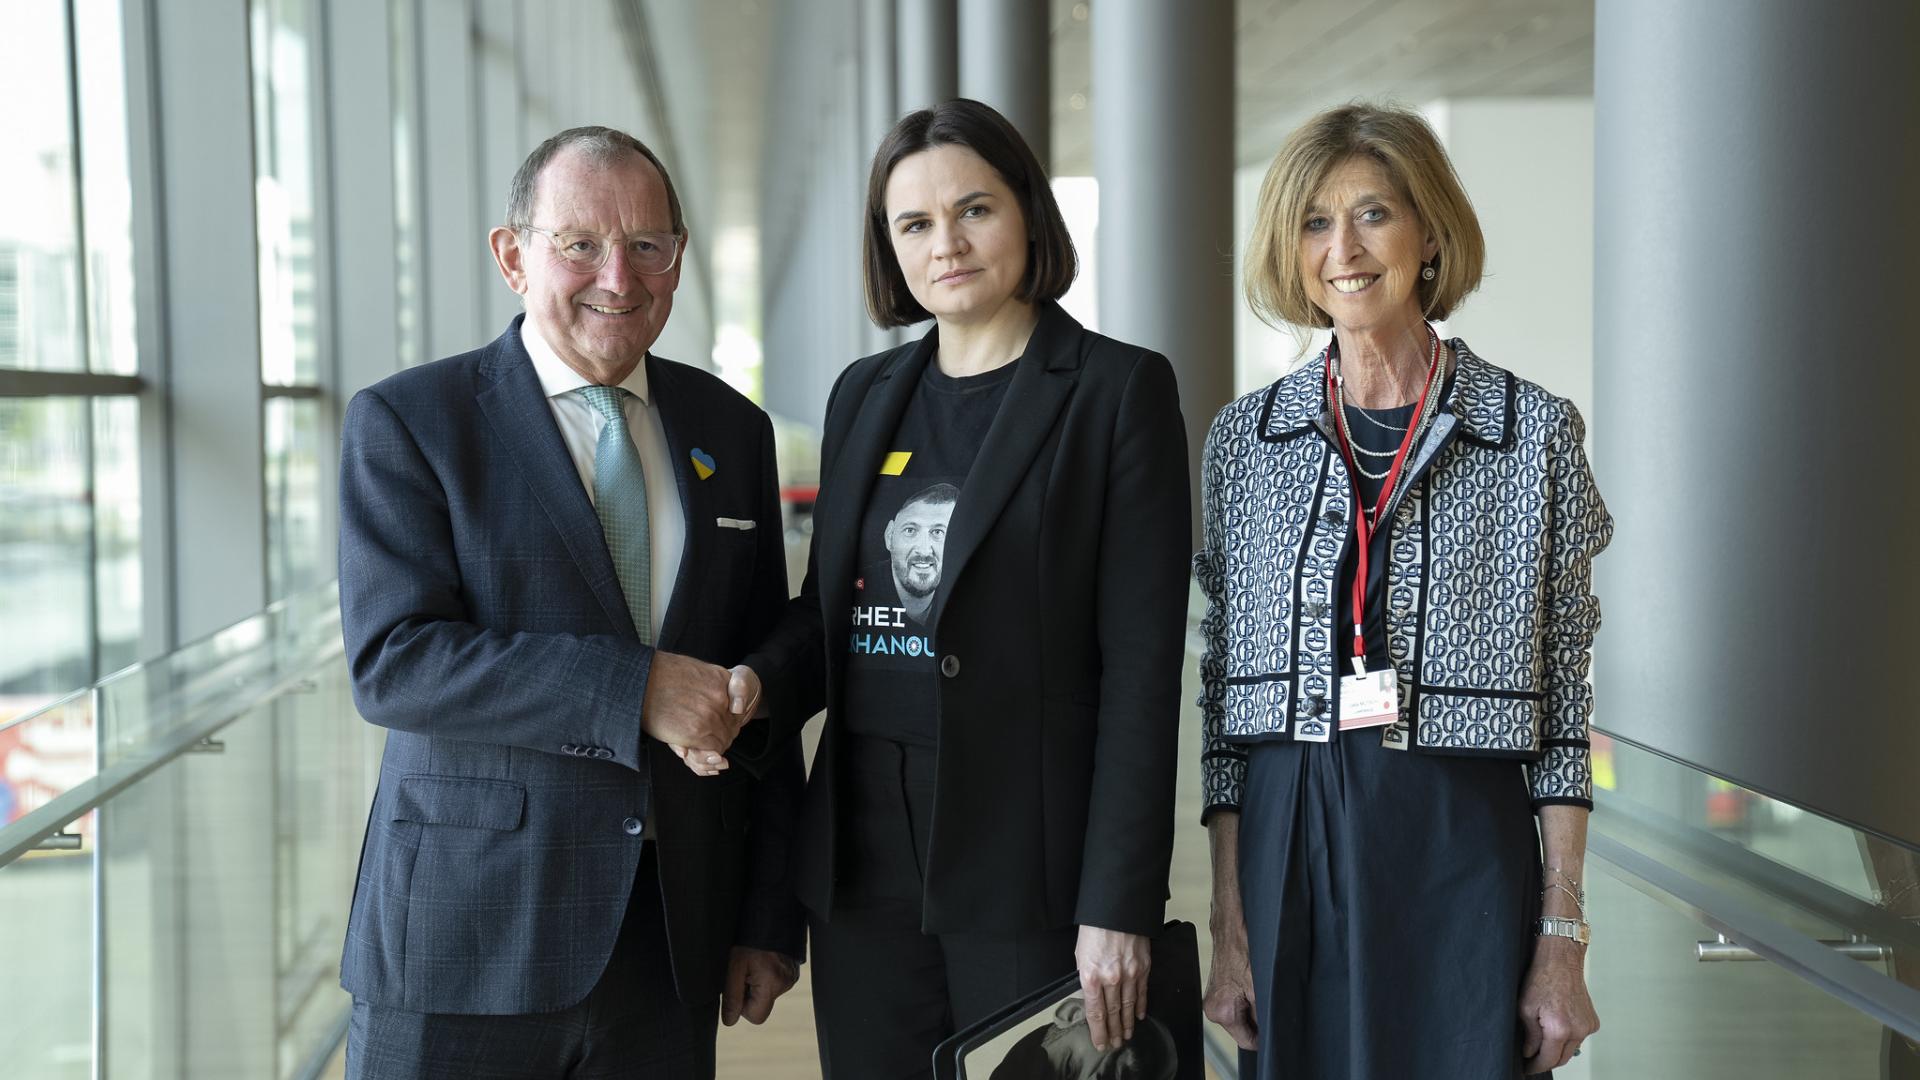 Le Président de la Chambre des Députés Fernand Etgen (à gauche) et la députée luxembourgeoise Lydia Mutsch (à droite) ont rencontré entre la cheffe de l’opposition du Bélarus Svetlana Tsikhanouskaïa.